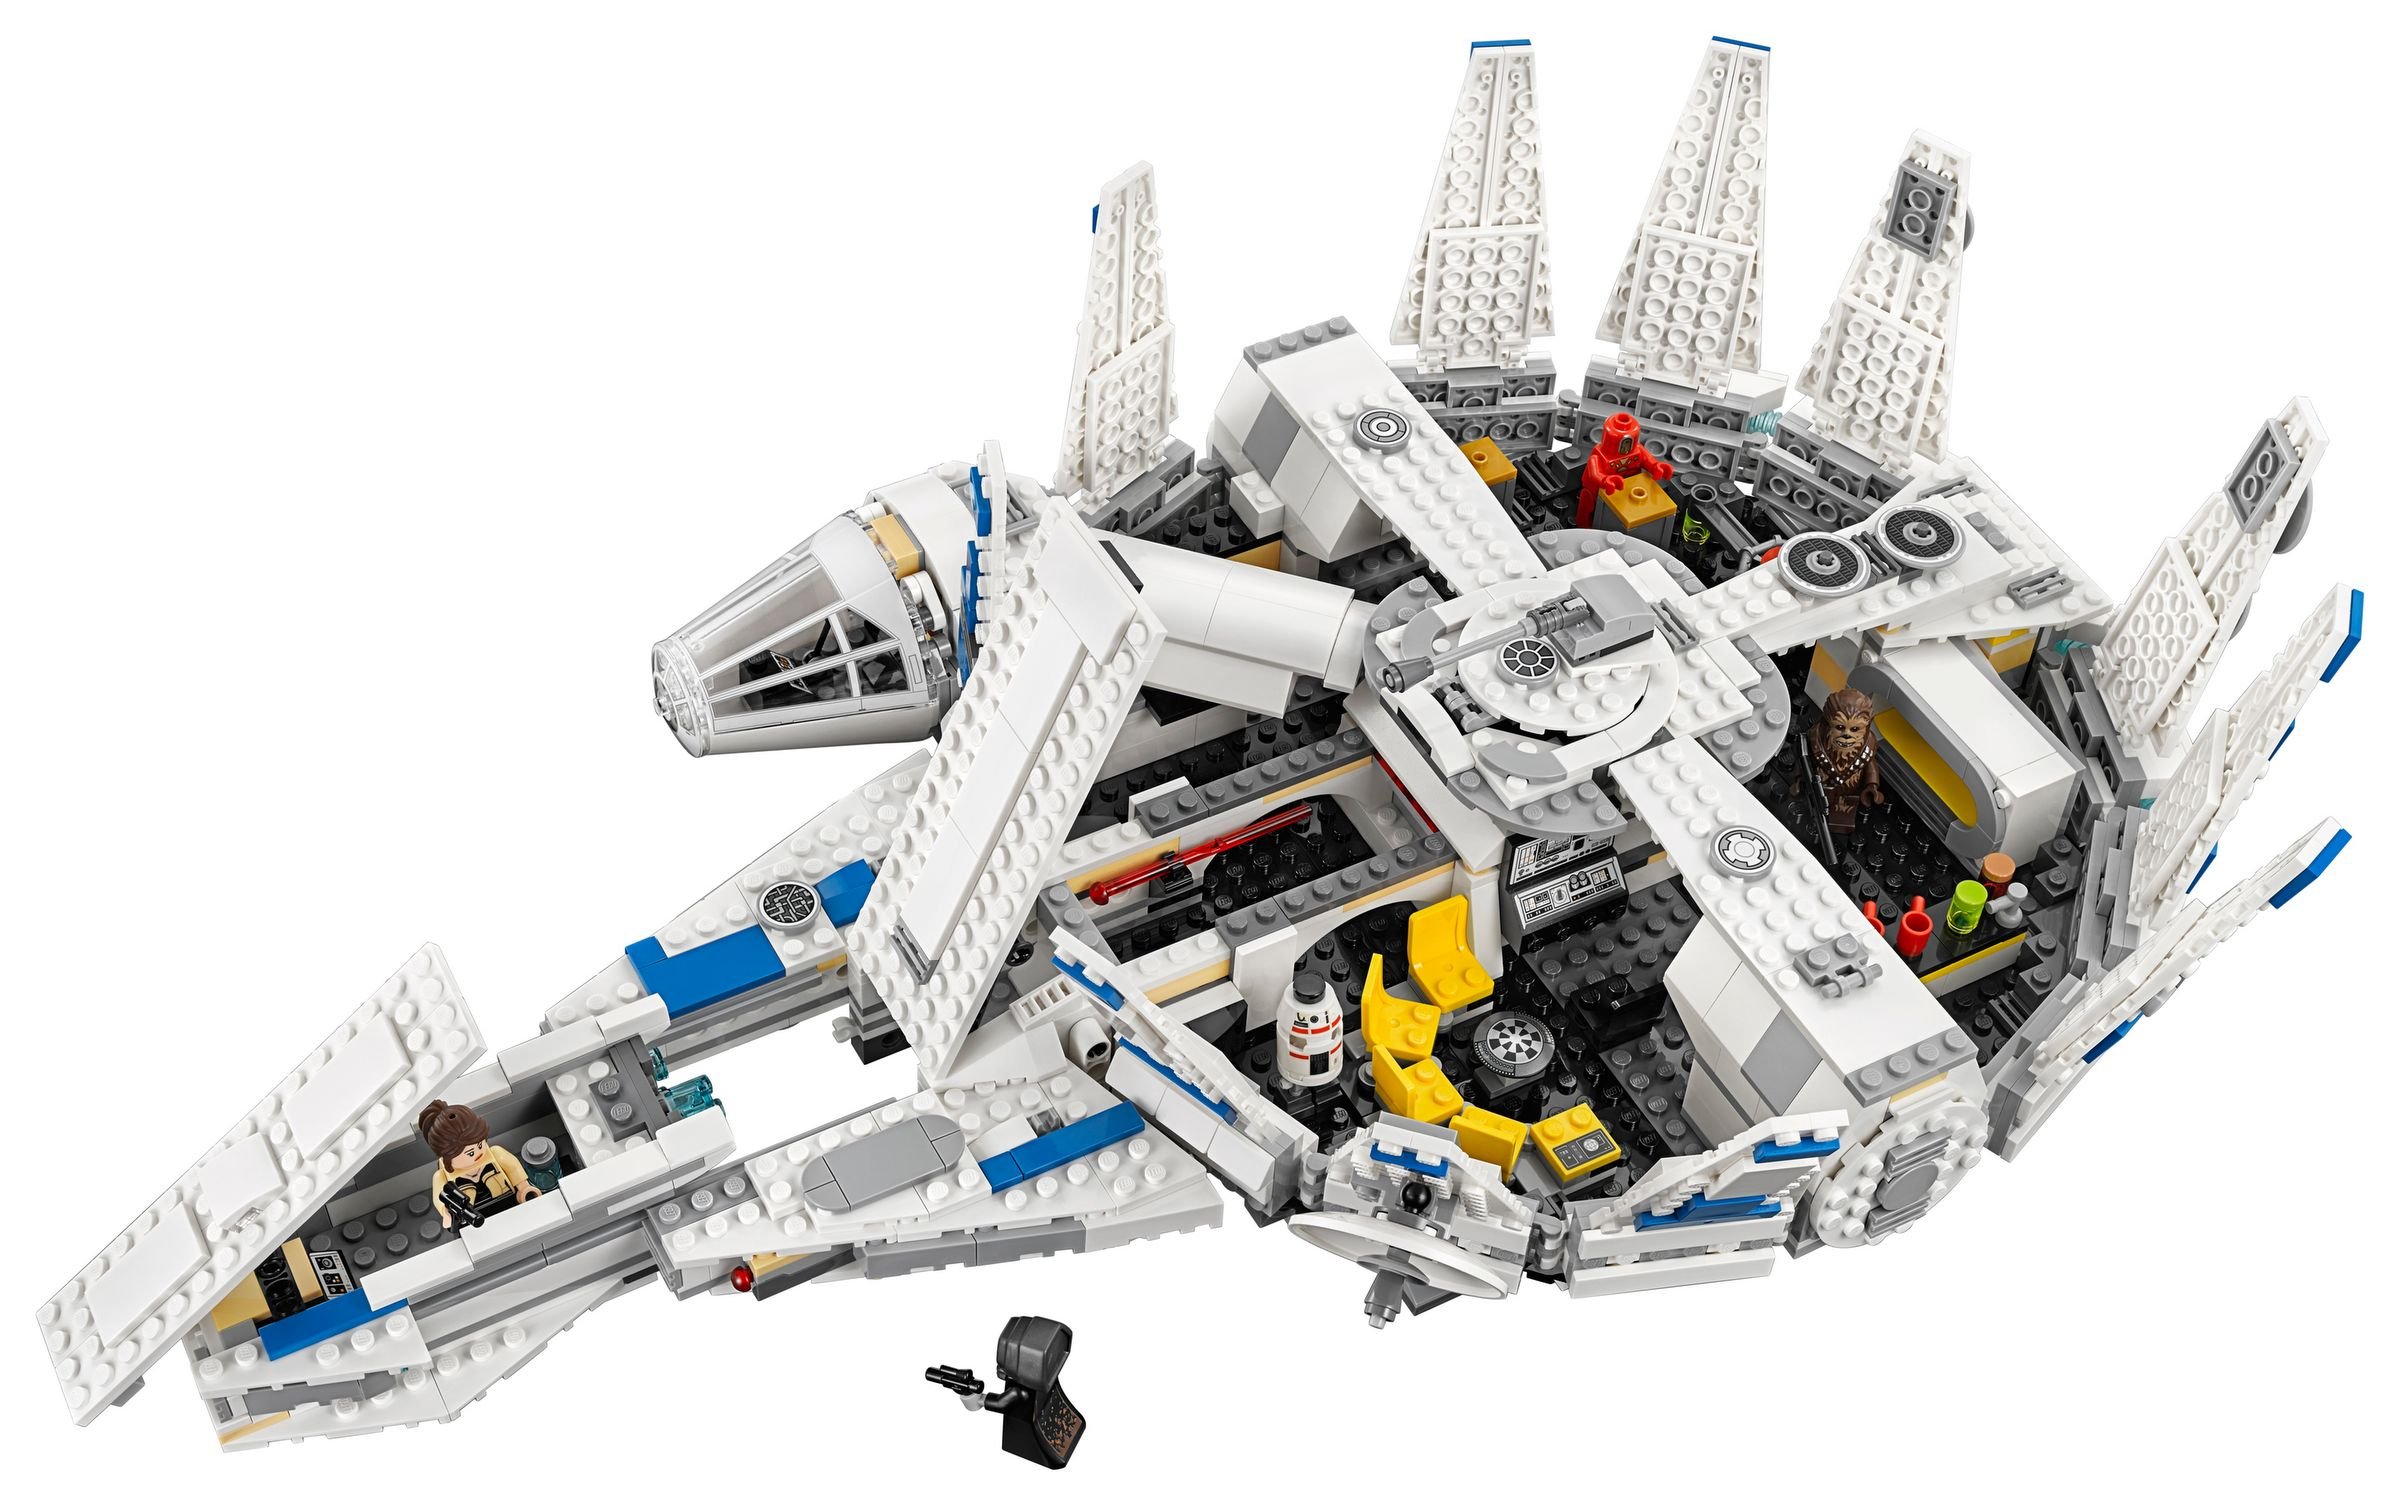 LEGO Star Wars 75212 Kessel Run Millennium Falcon™ LEGO_75212_alt3.jpg